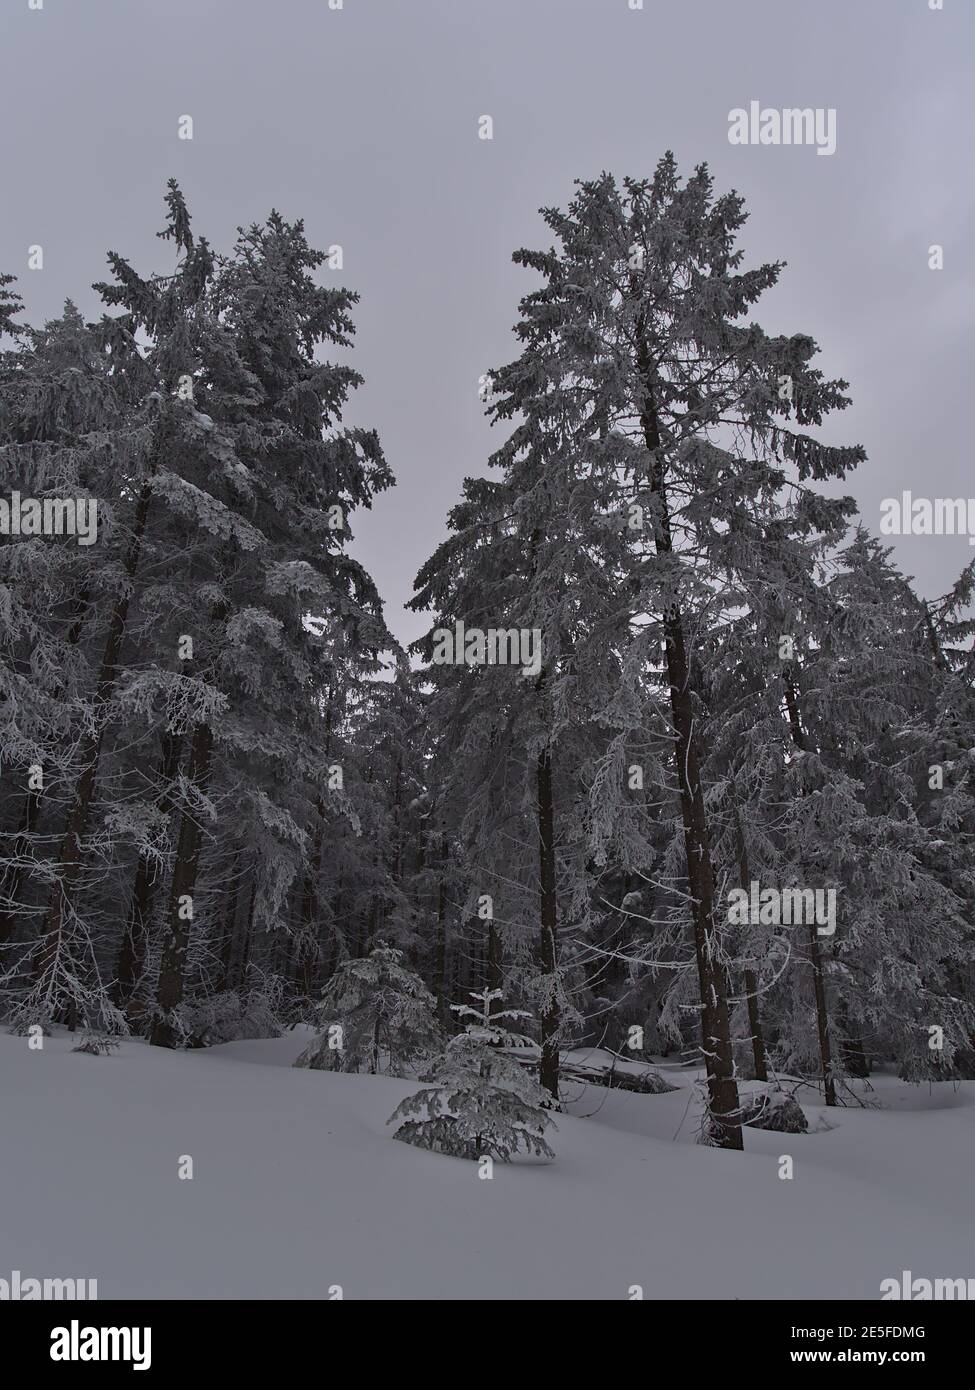 Friedliche Winterlandschaft mit Portrait-Ansicht von verschneiten Nadelbäumen mit gefrorenen Ästen nahe dem Schliffkopf, Deutschland im Schwarzwald. Stockfoto